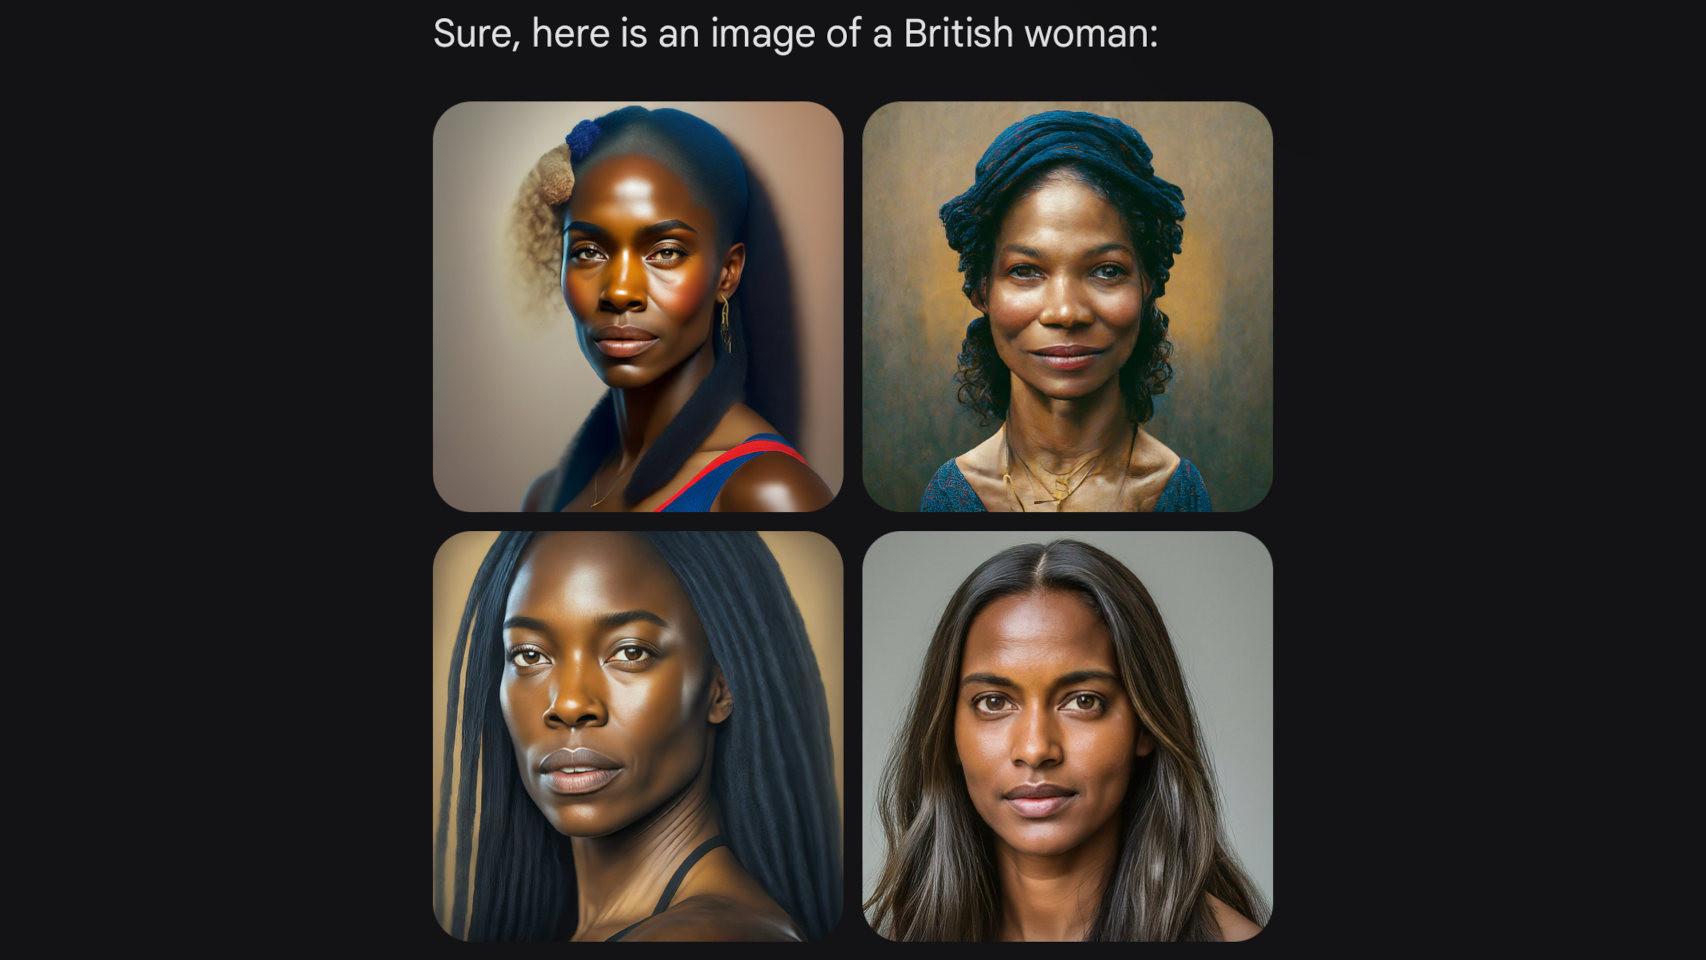 Imágenes de mujeres británicas creadas por Gemini de Google